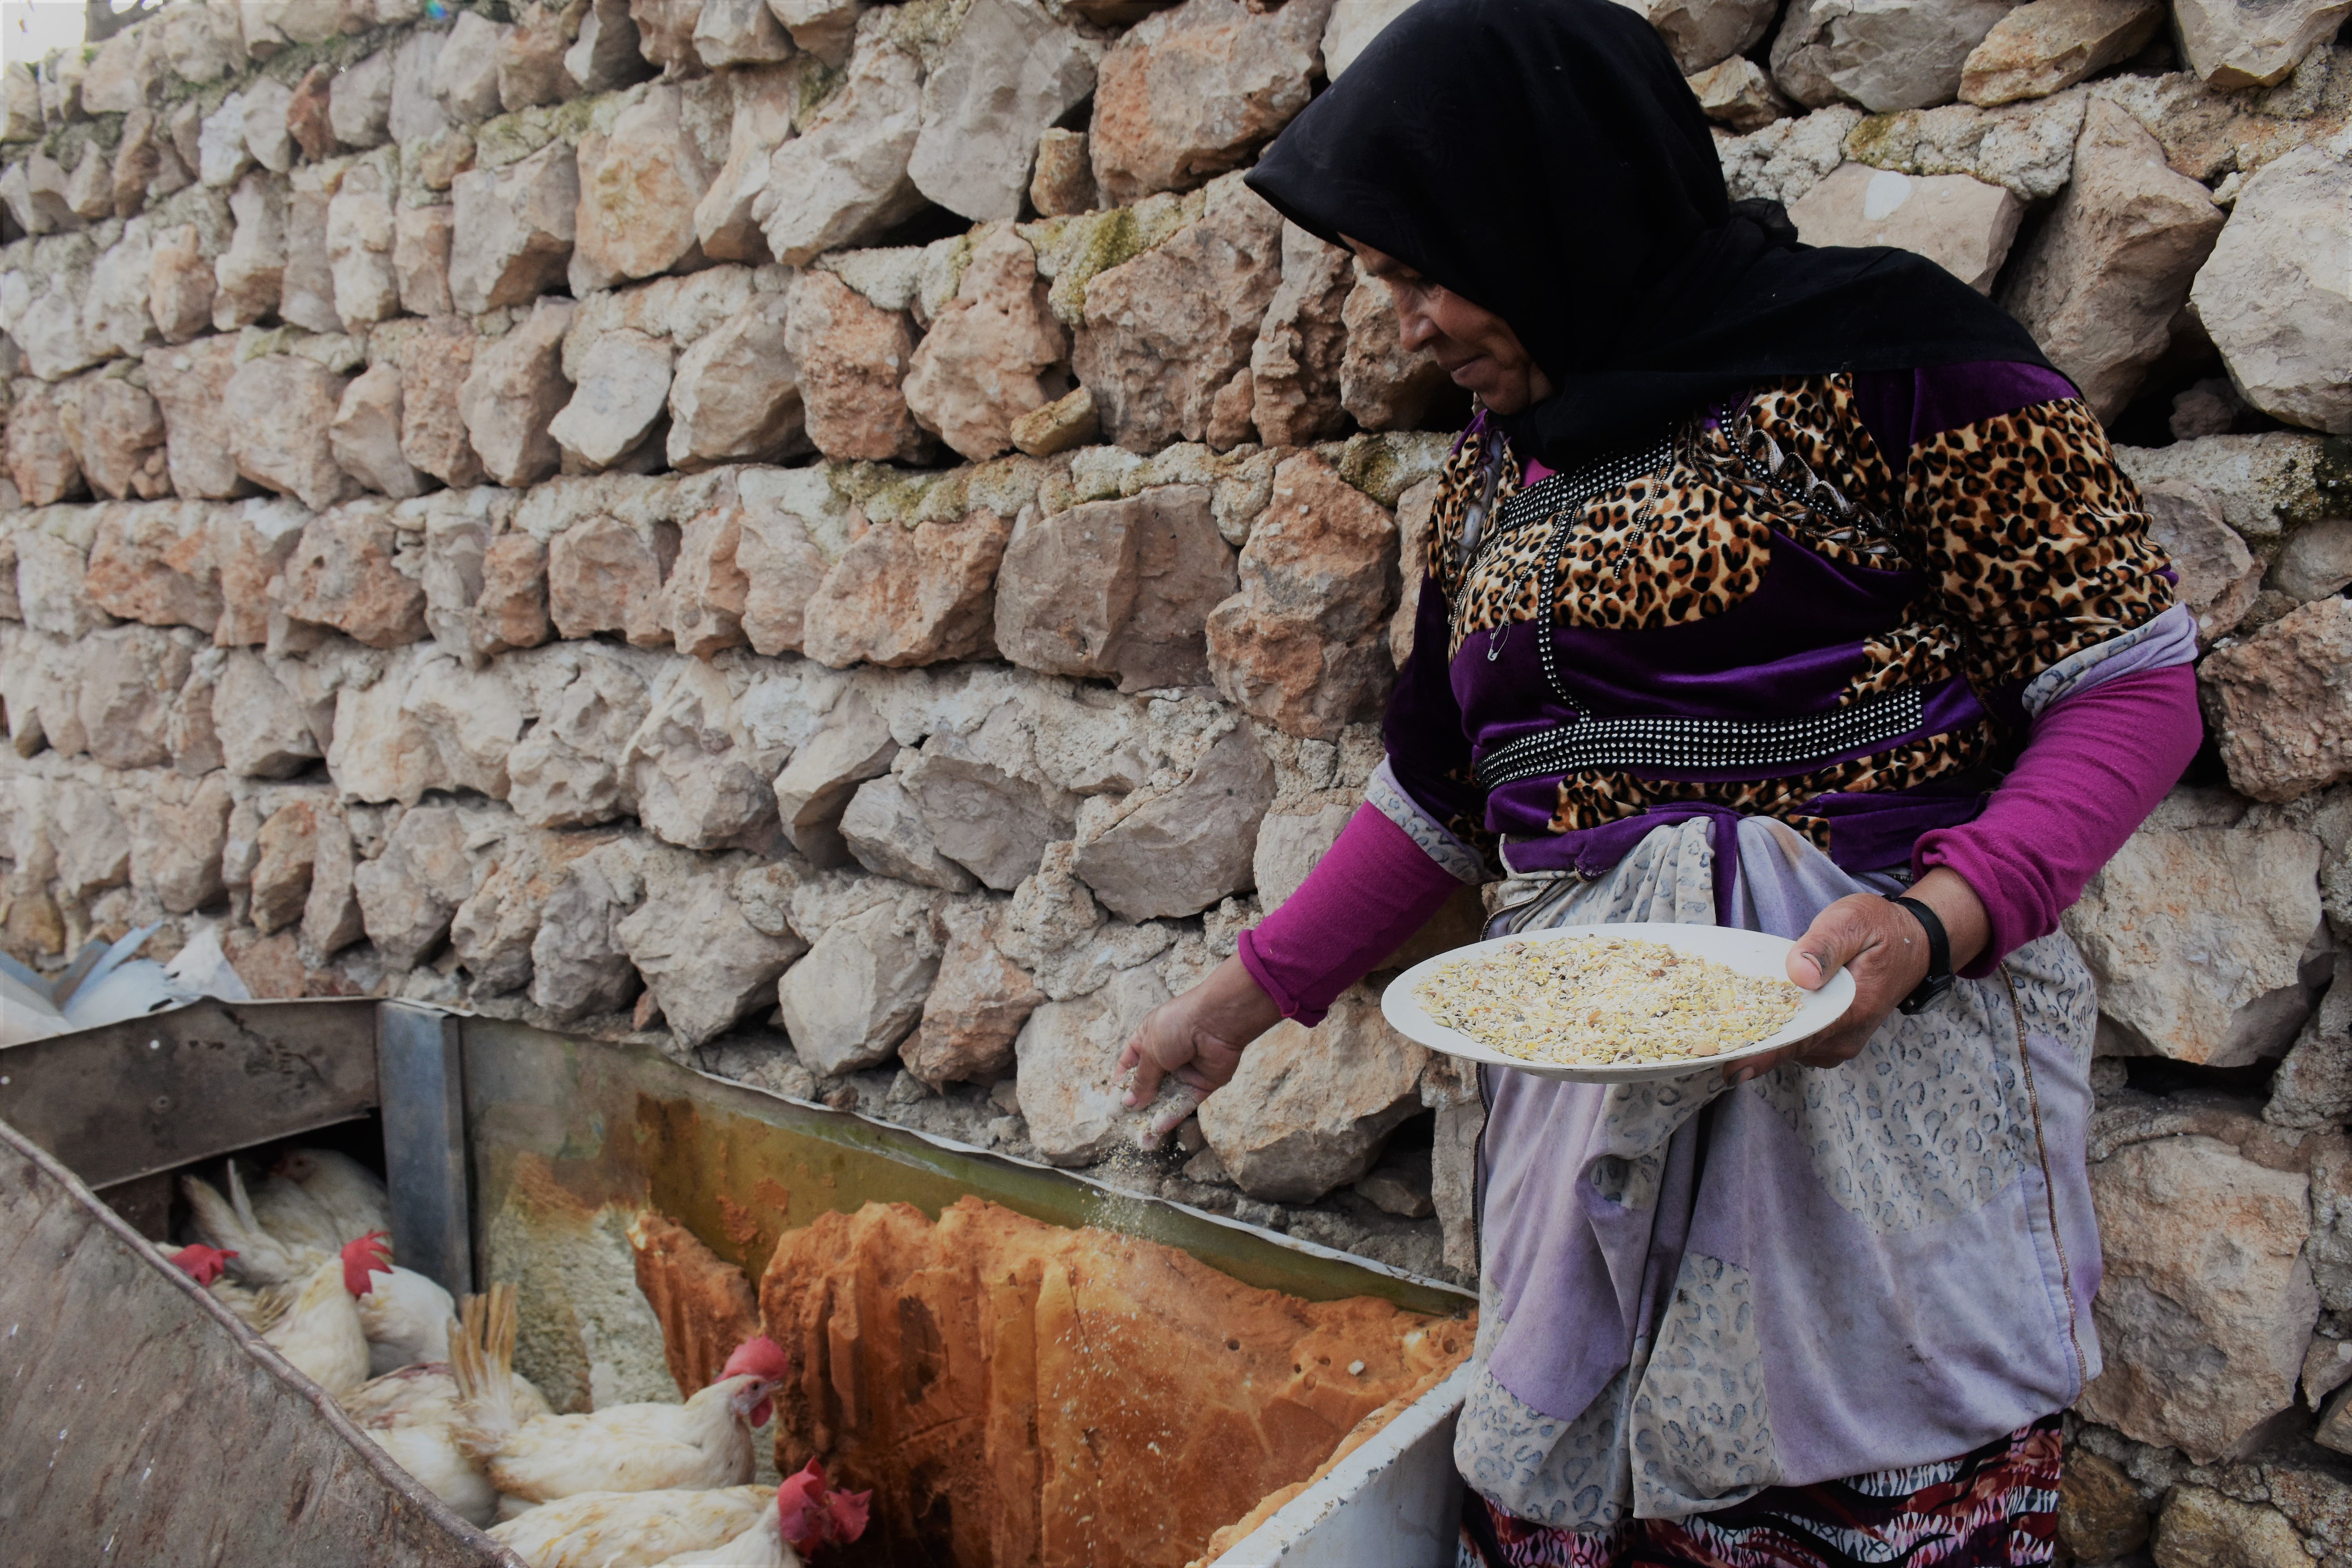 持續的戰火令國內的經濟活動幾乎完全停頓，國民的生計因而大受影響。Nouf曾經逃離原居地阿勒坡（Aleppo），近來當地局勢相對穩定，她決定返回阿勒坡。樂施會向Nouf及附近社區超過250個家庭提供雞隻及飼料，讓他們可以透過飼養牲畜、售賣雞隻和雞蛋，重建生計。（攝影︰Dania Kareh / Oxfam）